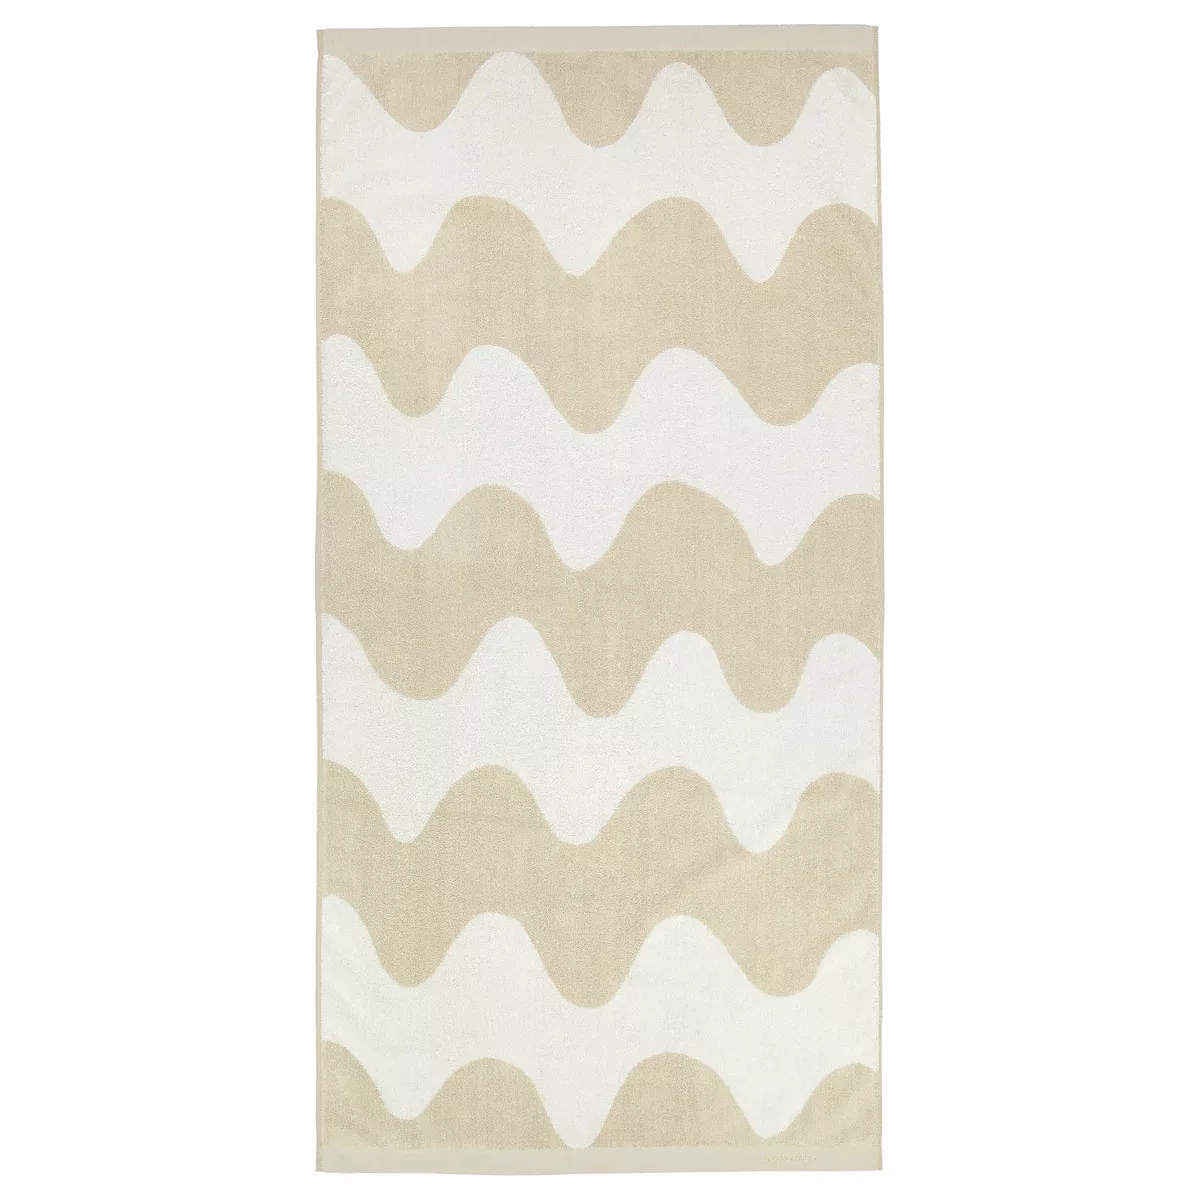 Lokki Handtuch beige-weiß 70 x 140cm günstig online kaufen